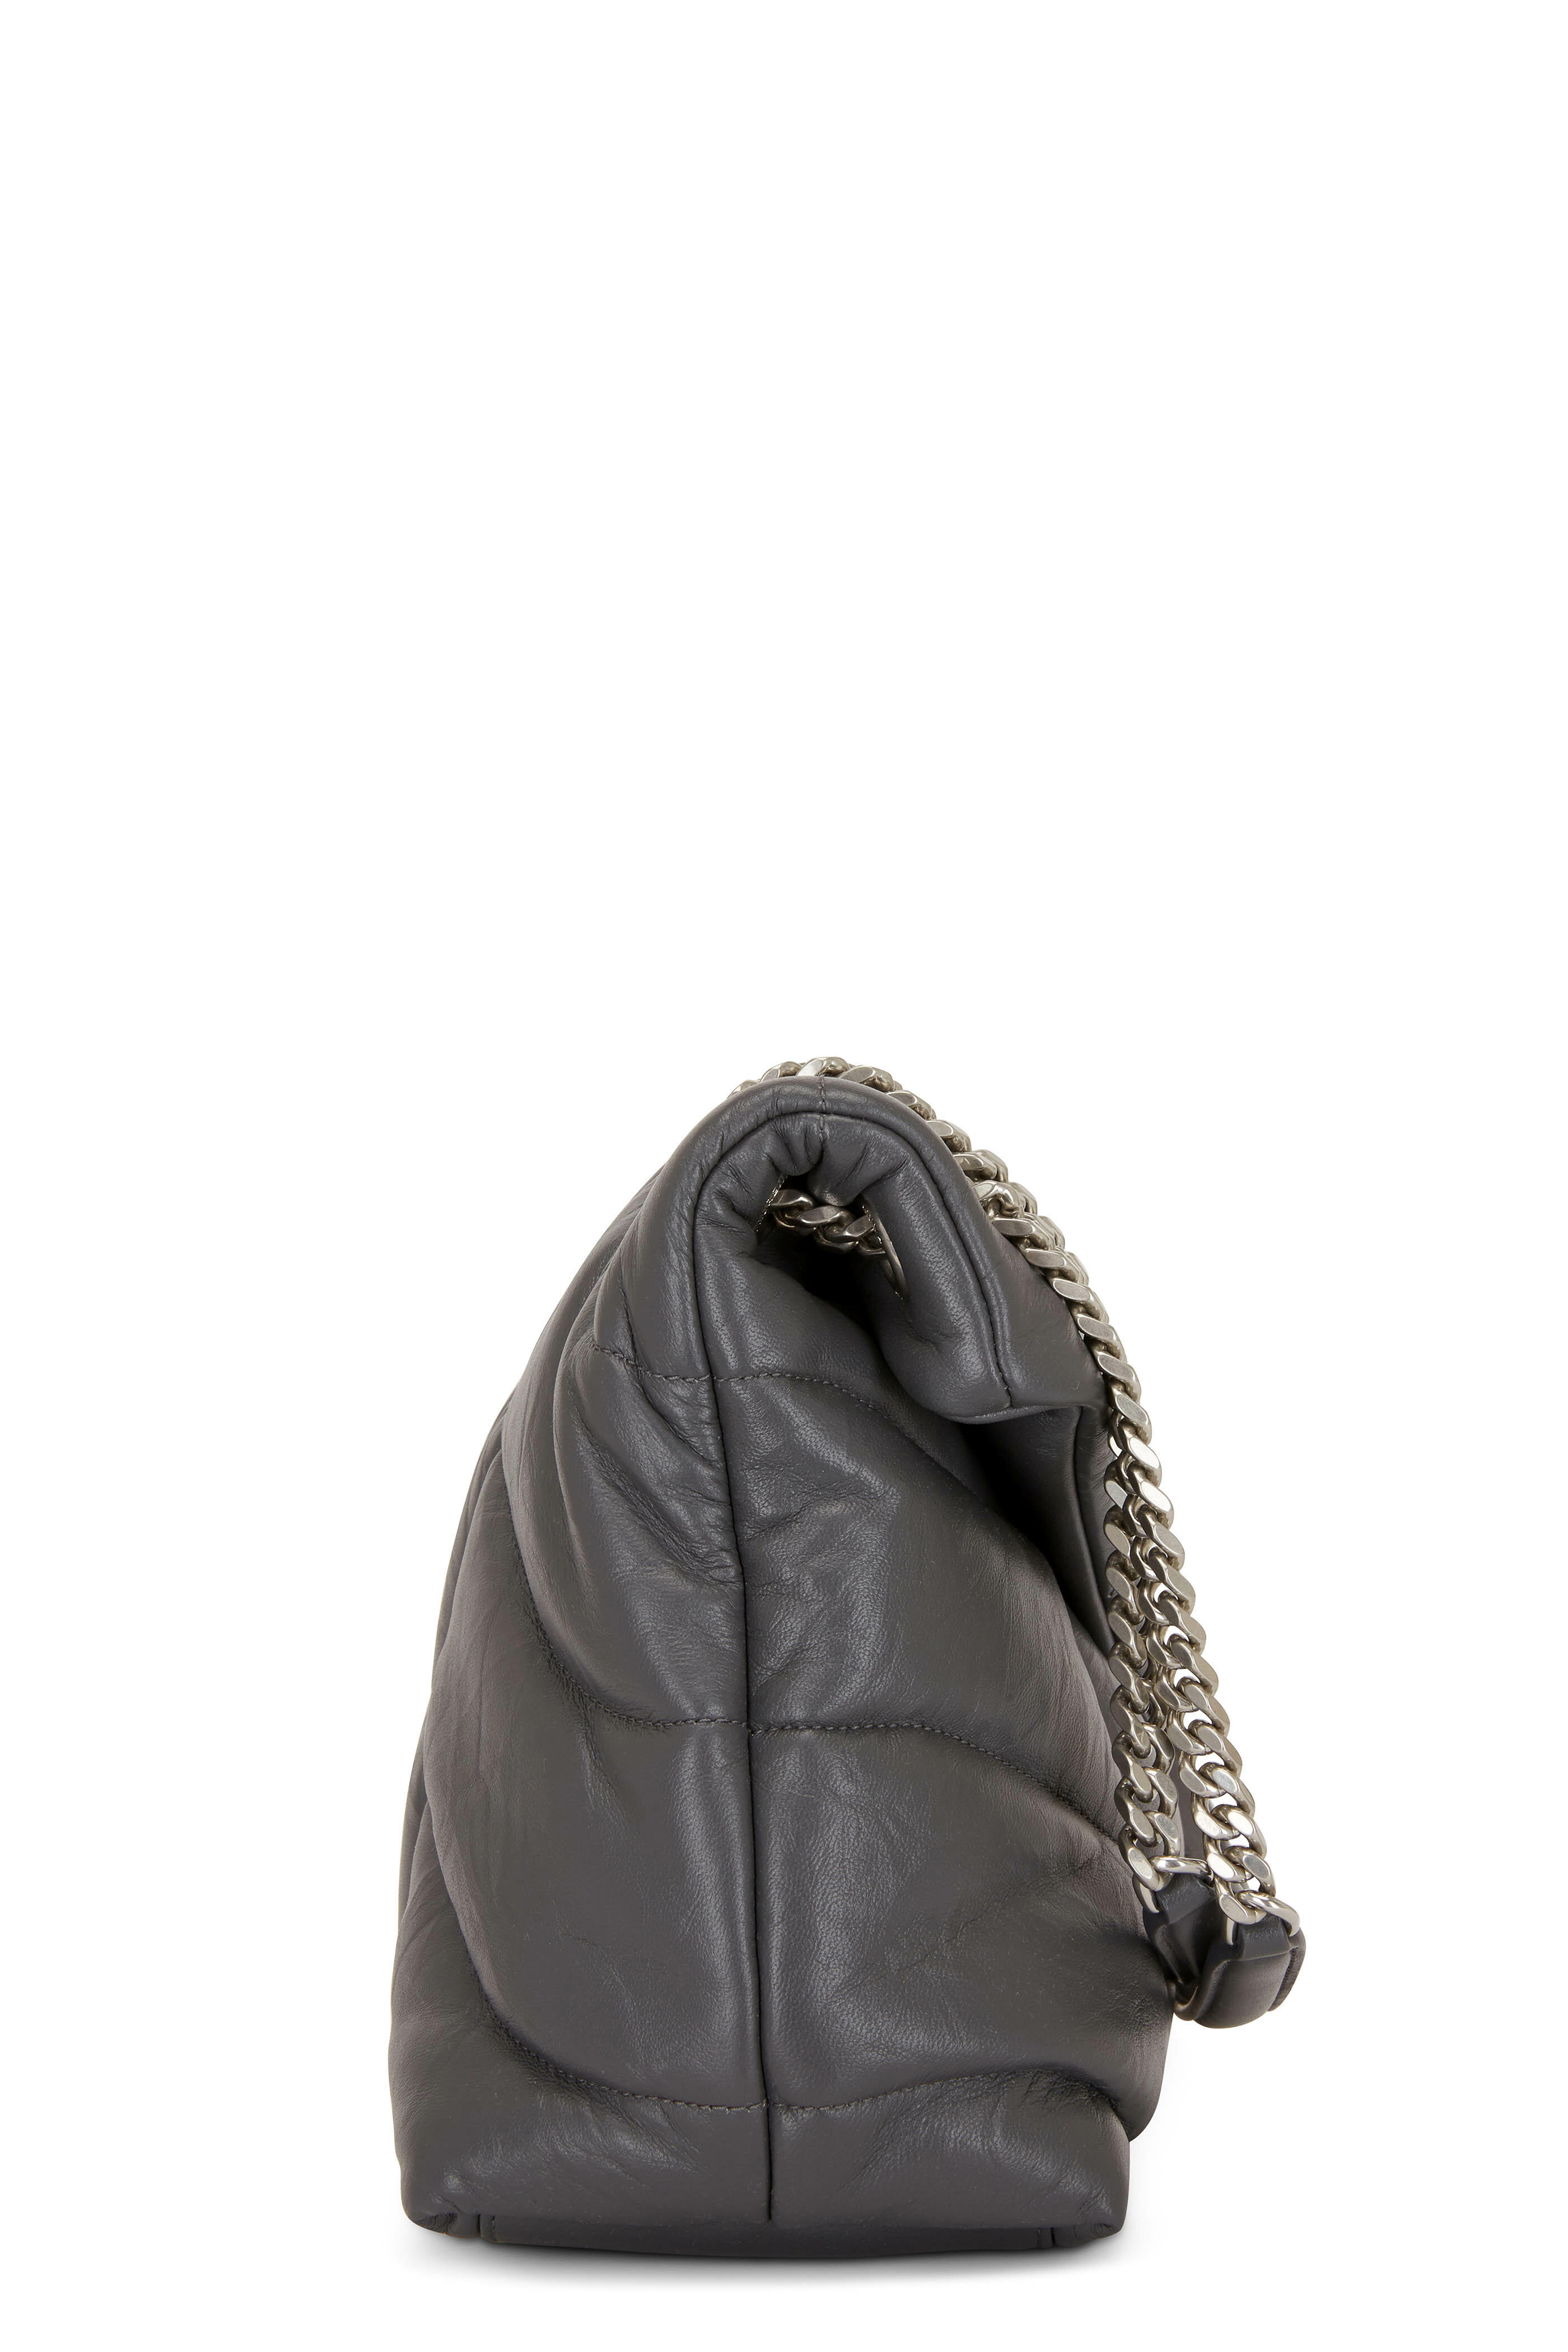 Saint Laurent - Storm Leather Monogram Hobo Shoulder Bag